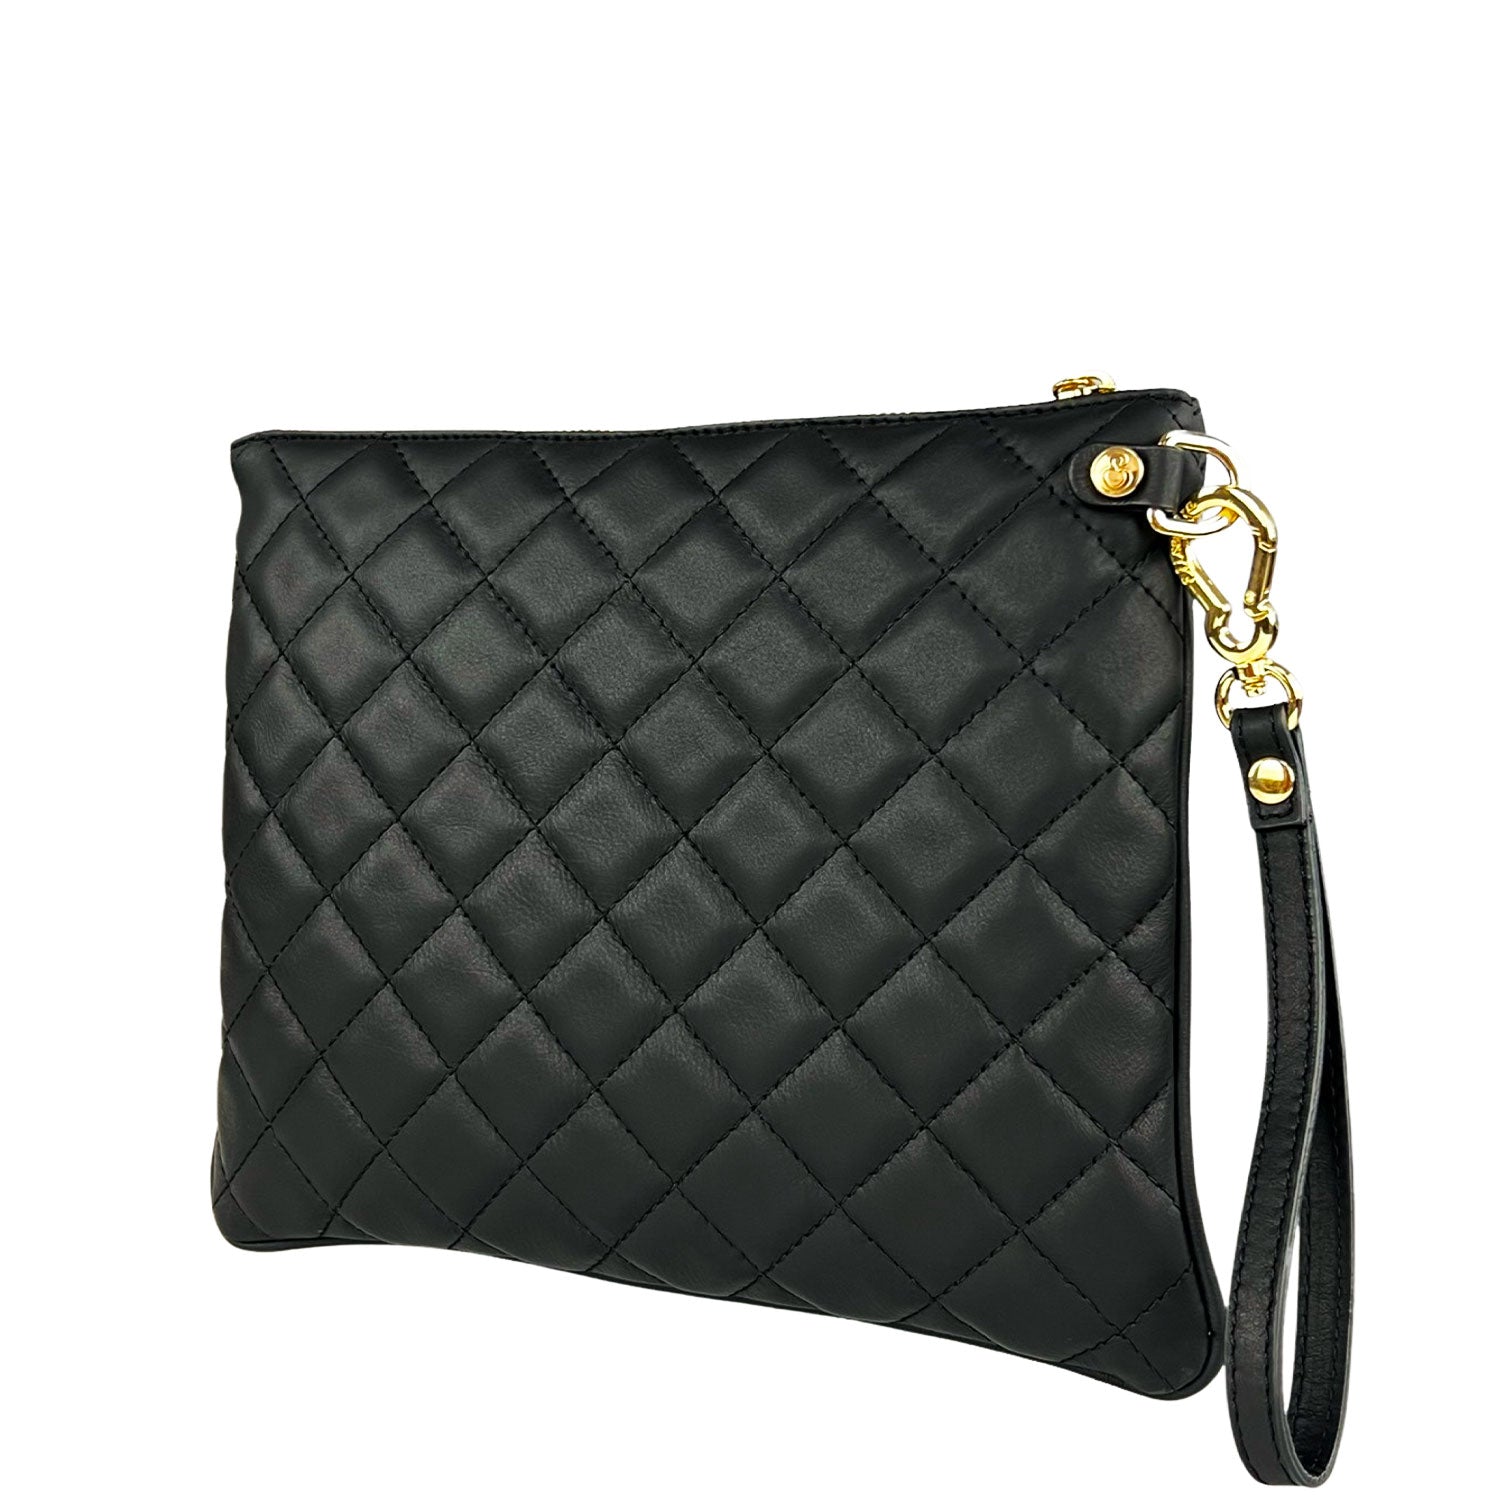 Grazia Tiffany – Pochette – Matelassé leather